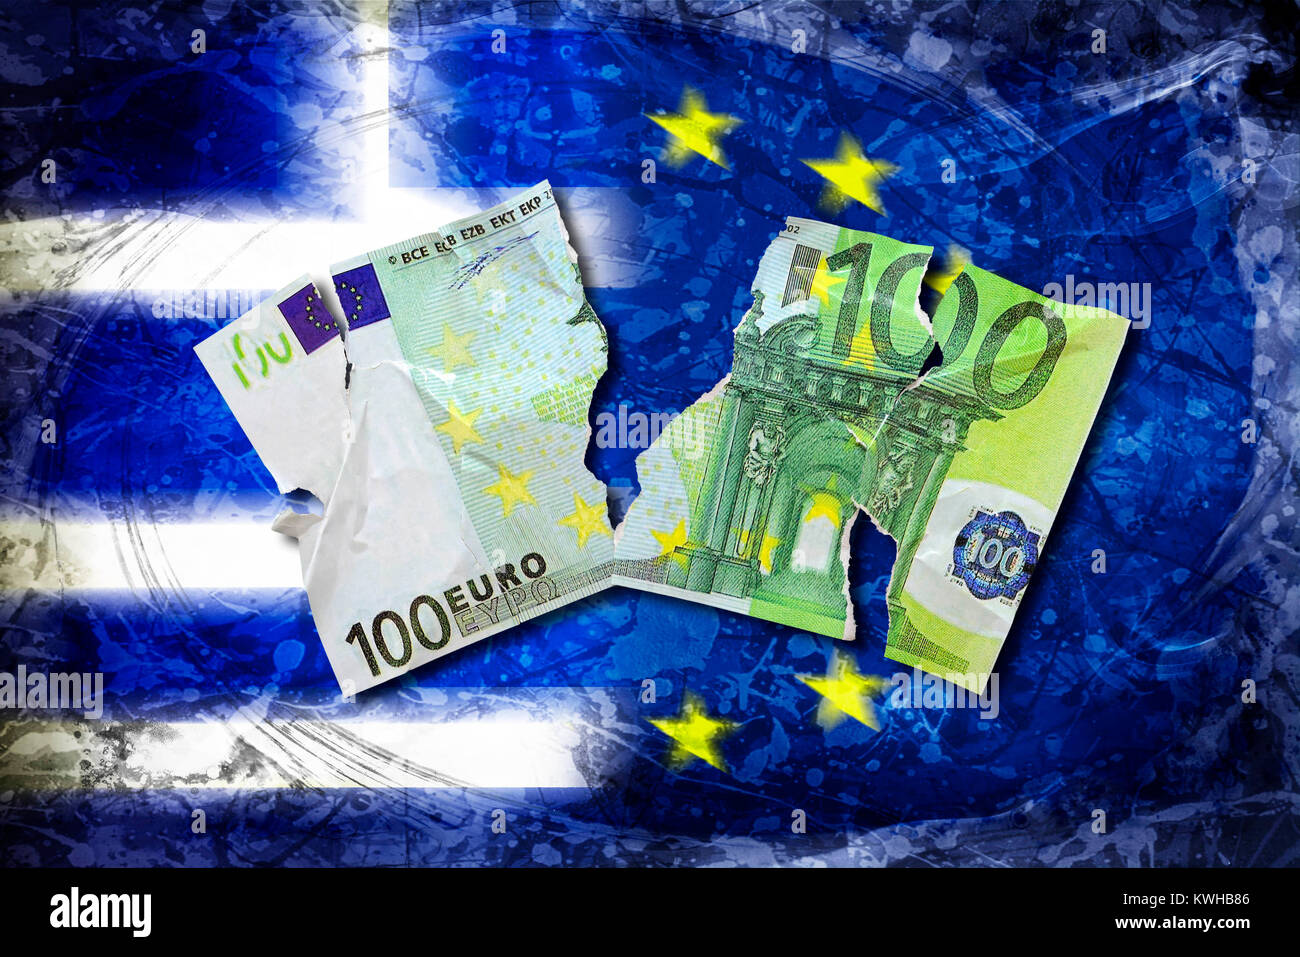 100 déchiré-euro-light avant que la Grèce et l'Union européenne drapeau, photo symbolique Grexit, Zerrissener Euro-Schein 100-Türkei Vor- und EU-Fahne, Symbolfoto Grexit Banque D'Images